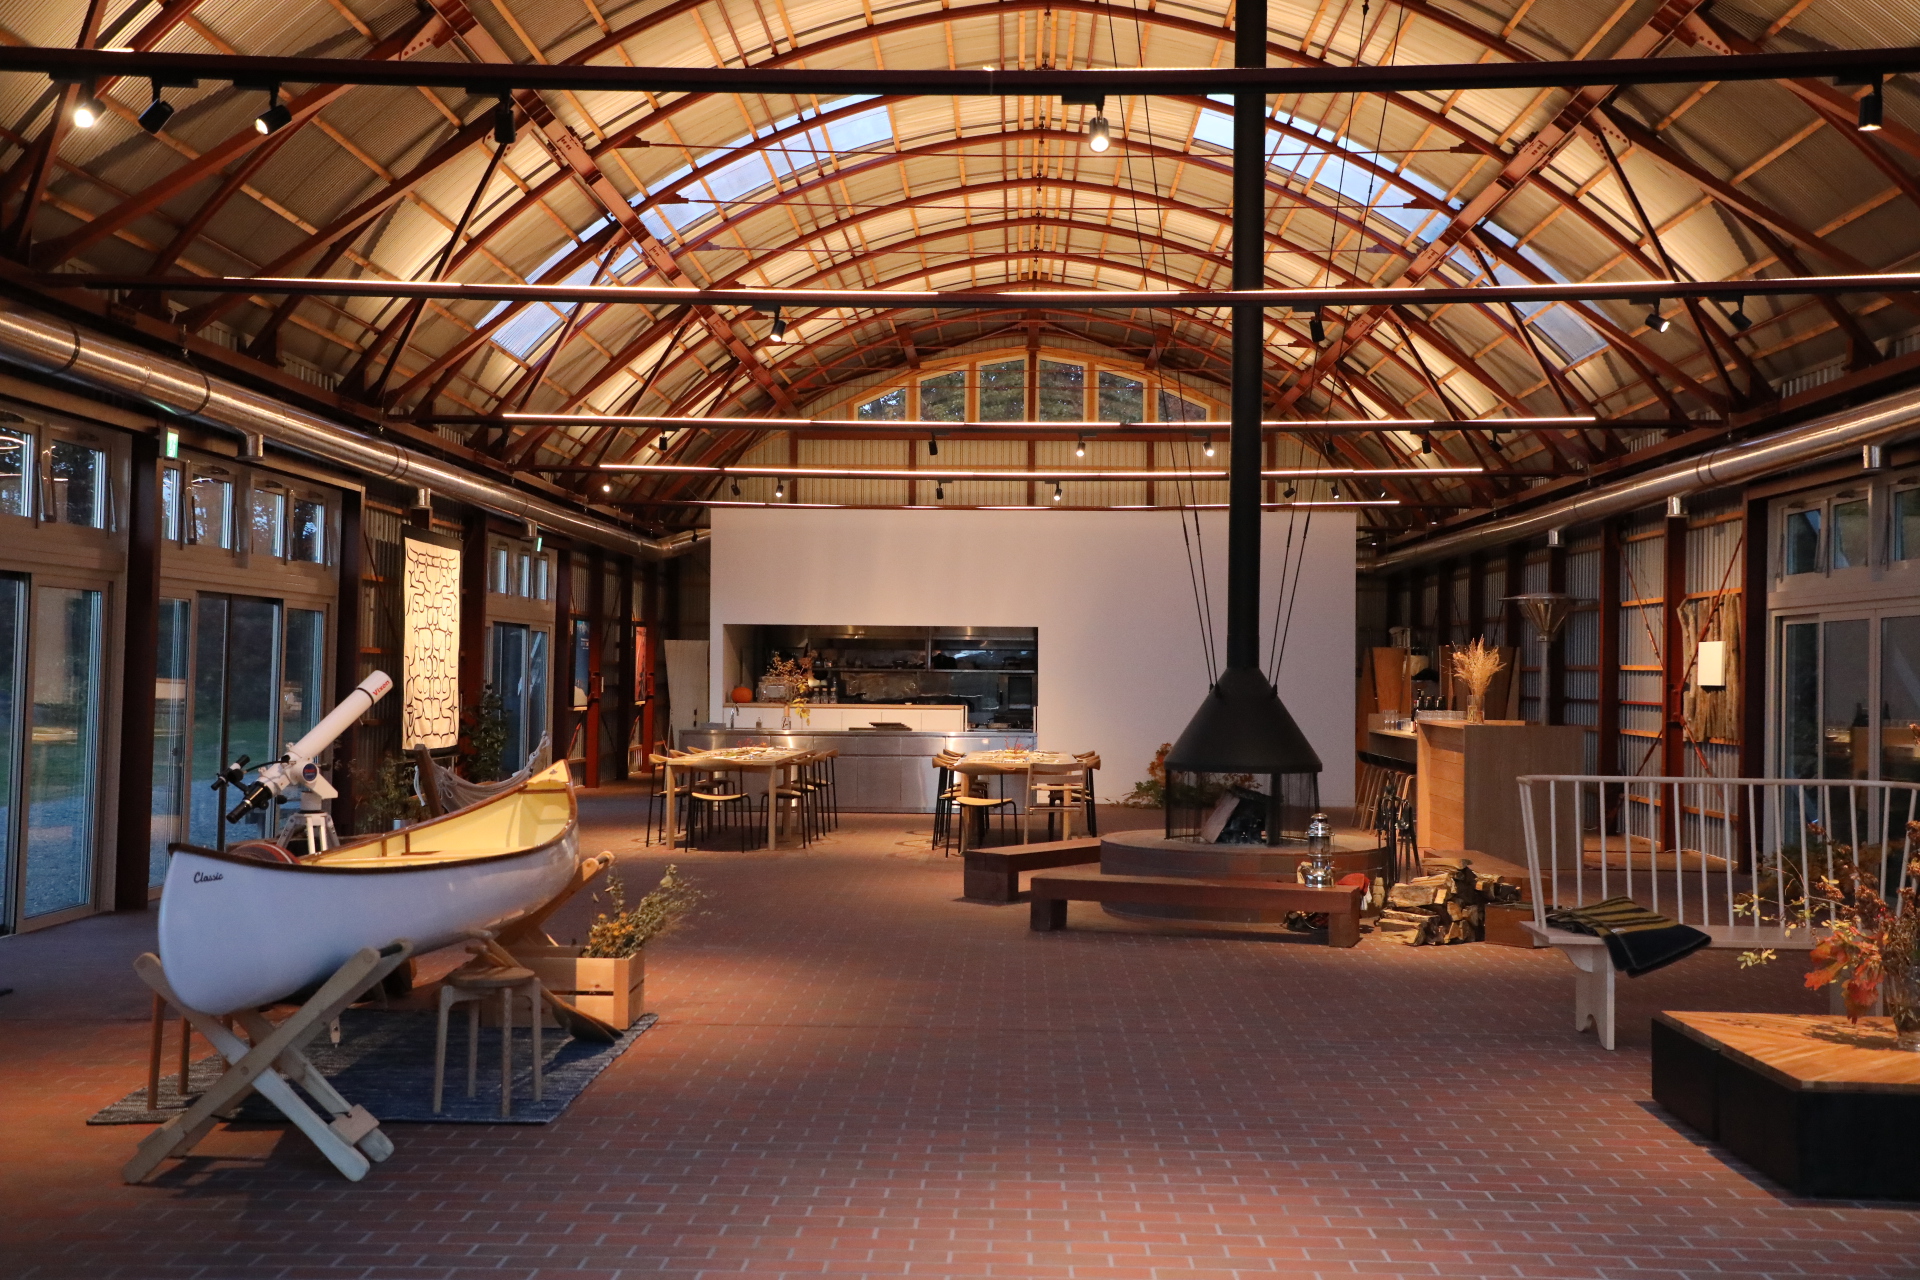 「スタジオ メム」は、建築家の伊東豊雄氏が築40年以上経過した牧草保管用倉庫をリノベーションした